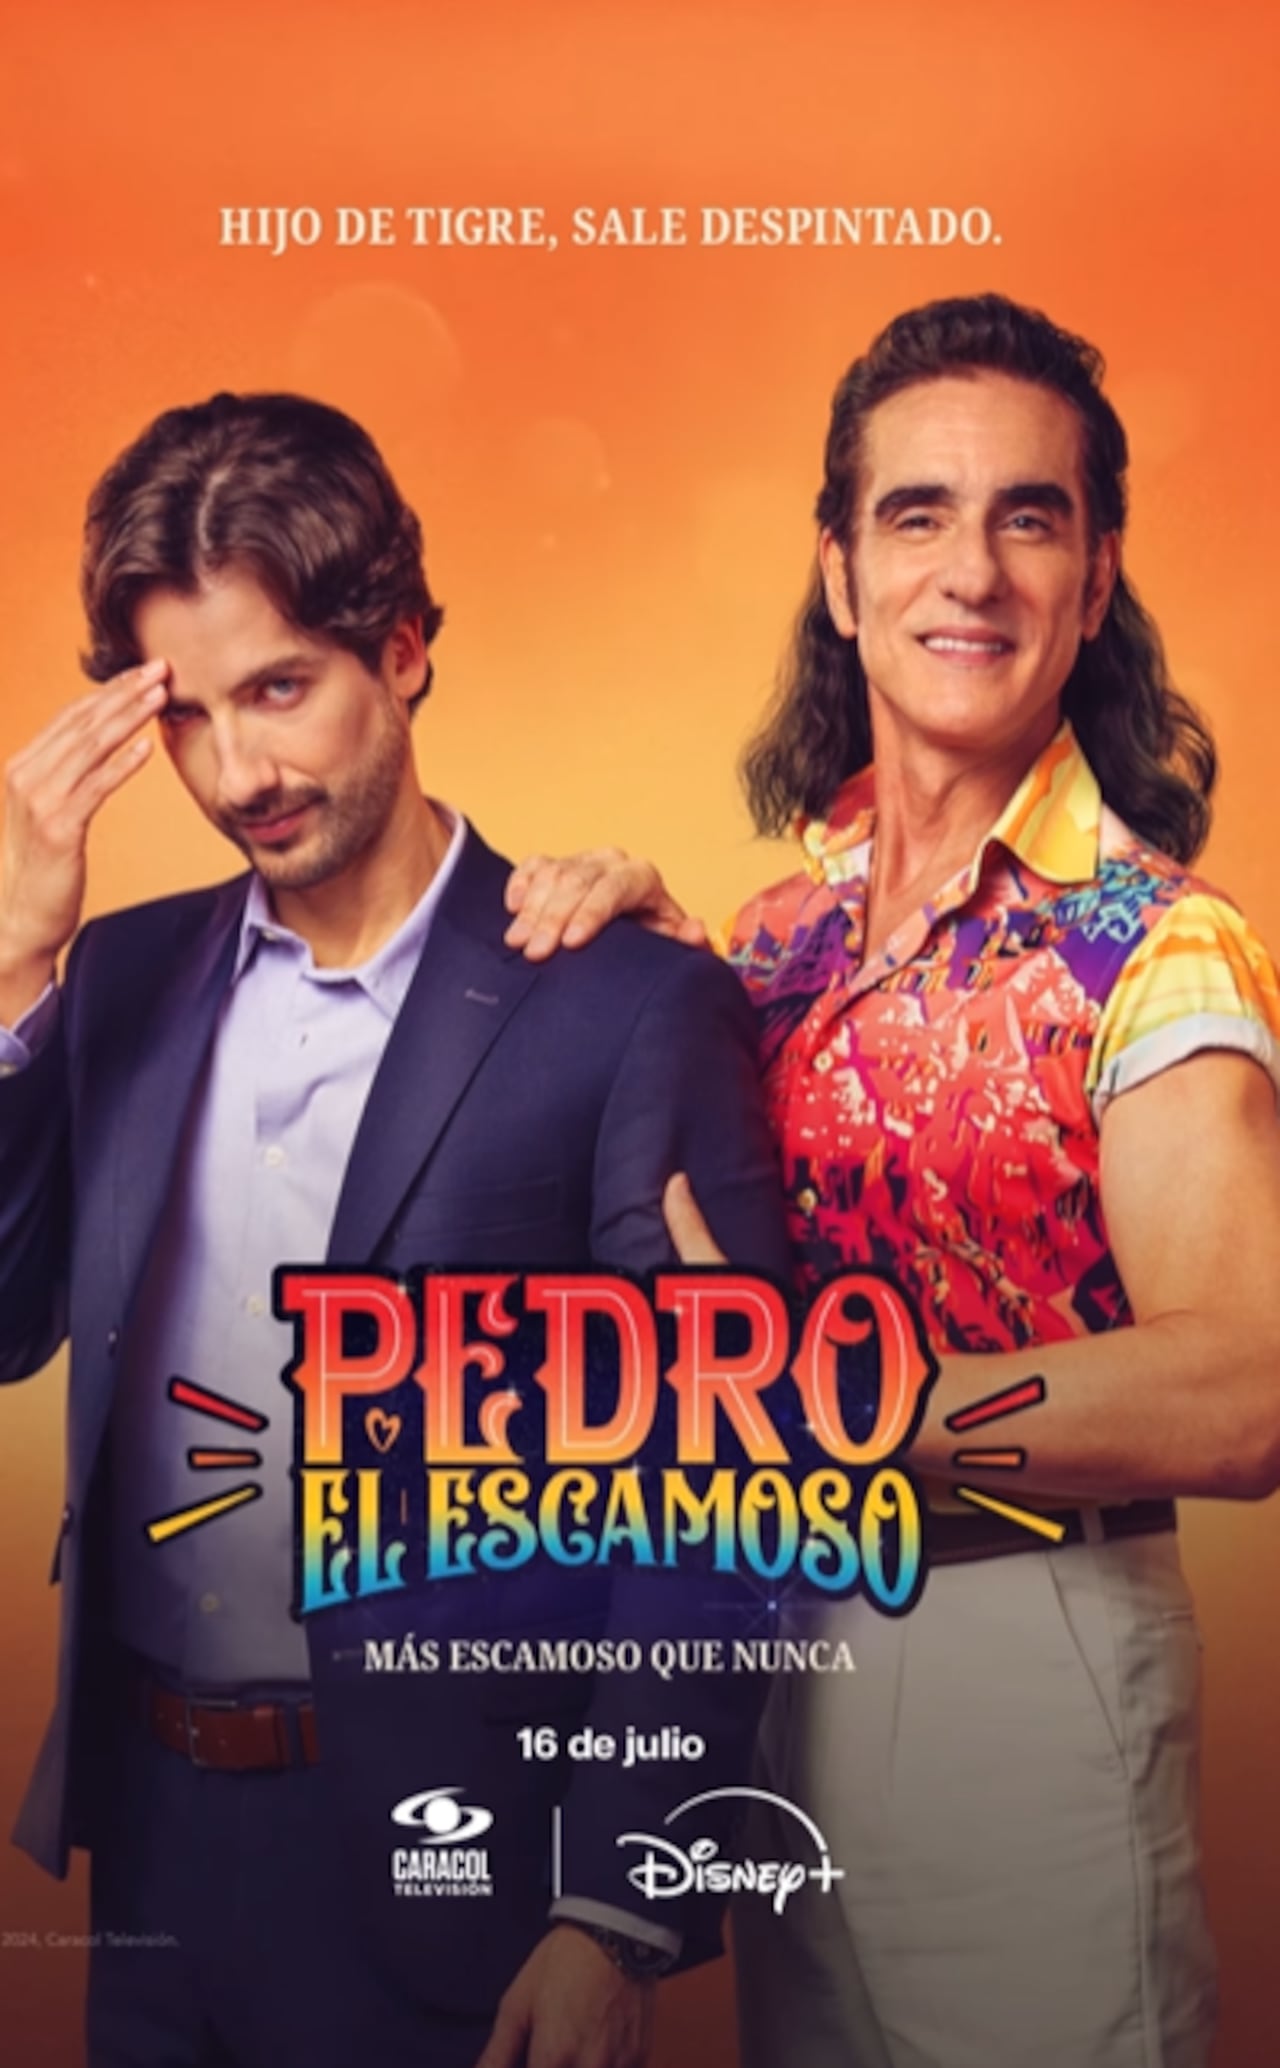 Pedro el escamoso regresa con una segunda parte que sorprenderá a los televidentes y se estrena el próximo 16 de julio.